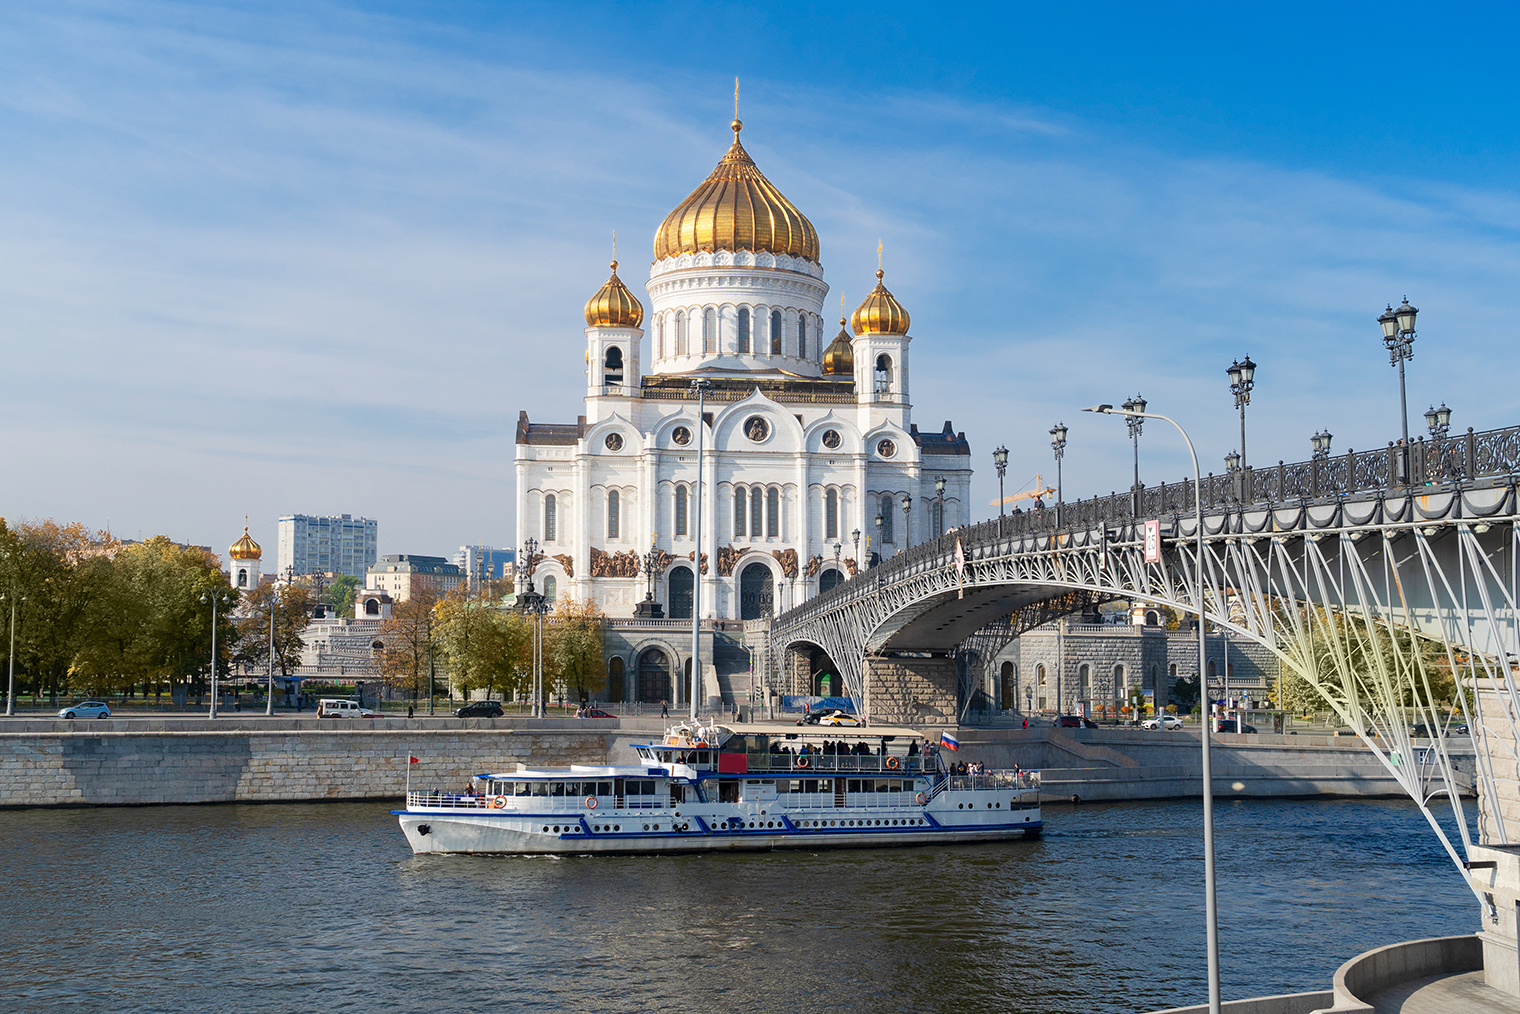 Вид на храм Христа Спасителя и Патриарший мост с Берсеневской набережной. Фото: Neirfy / Shutterstock